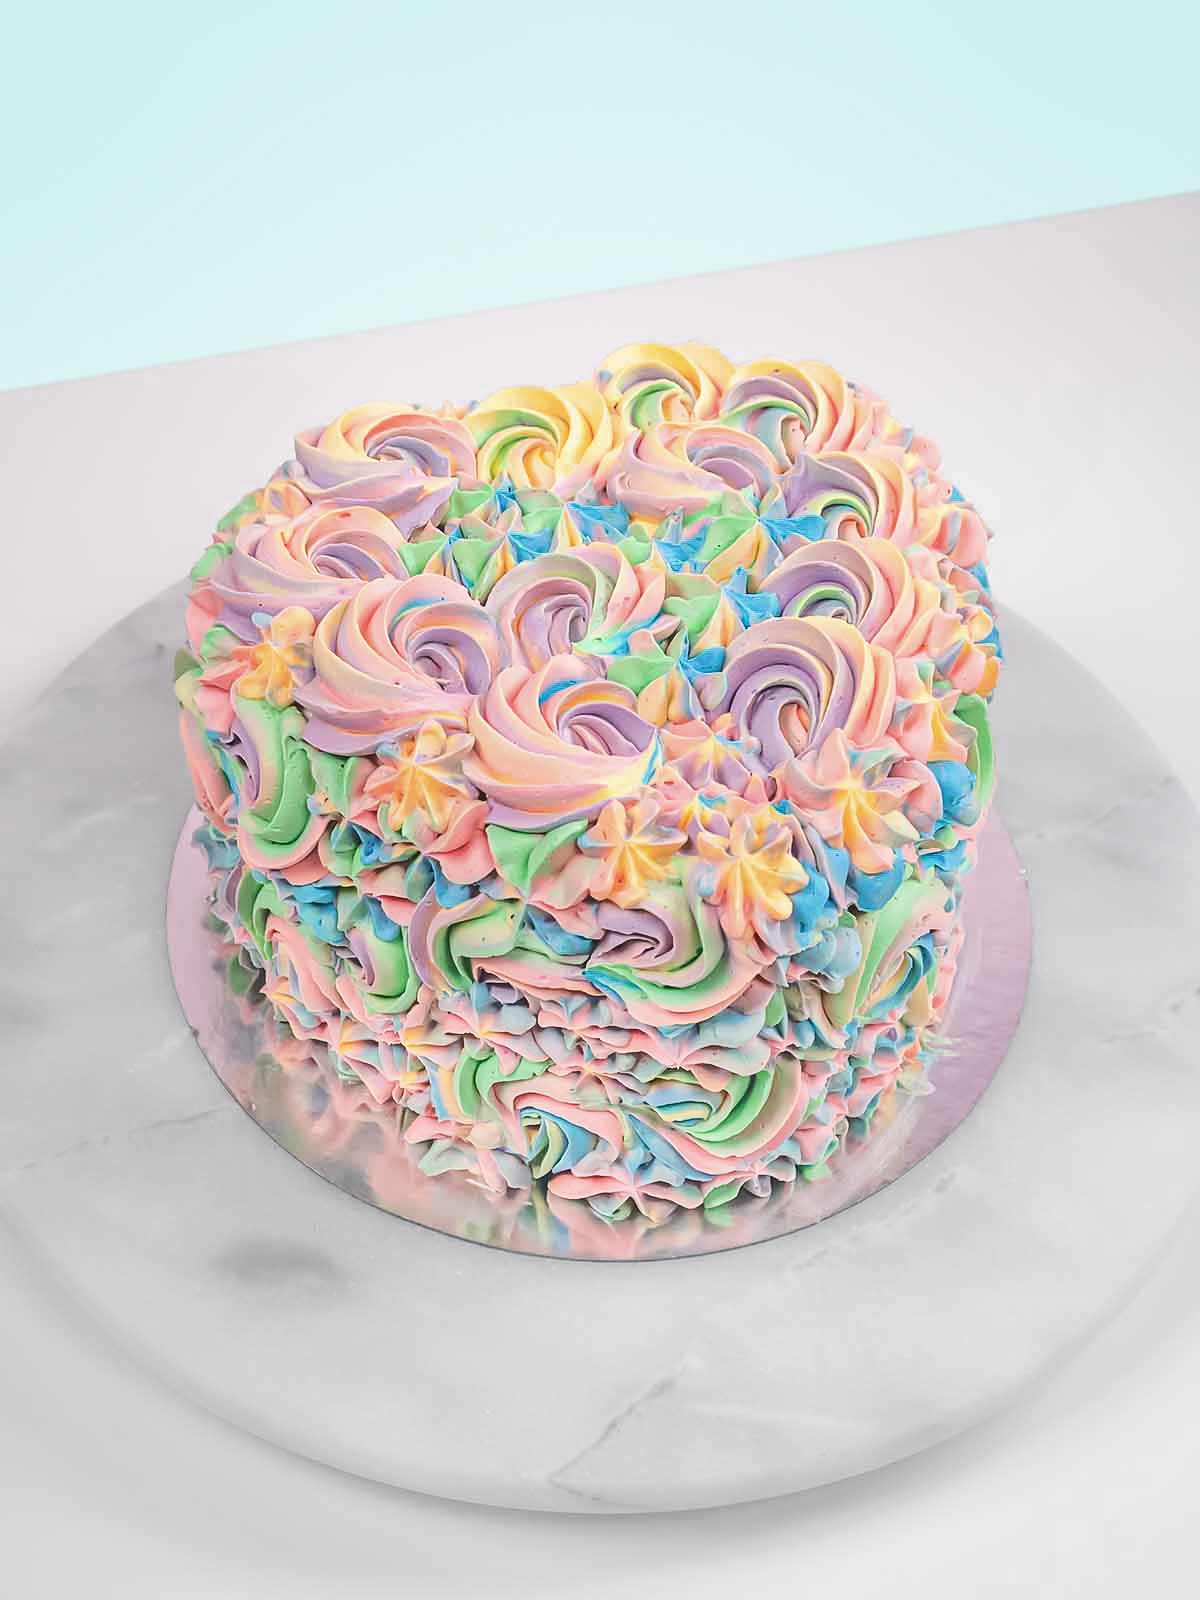 Pastel Swirl Heart Cake to Buy